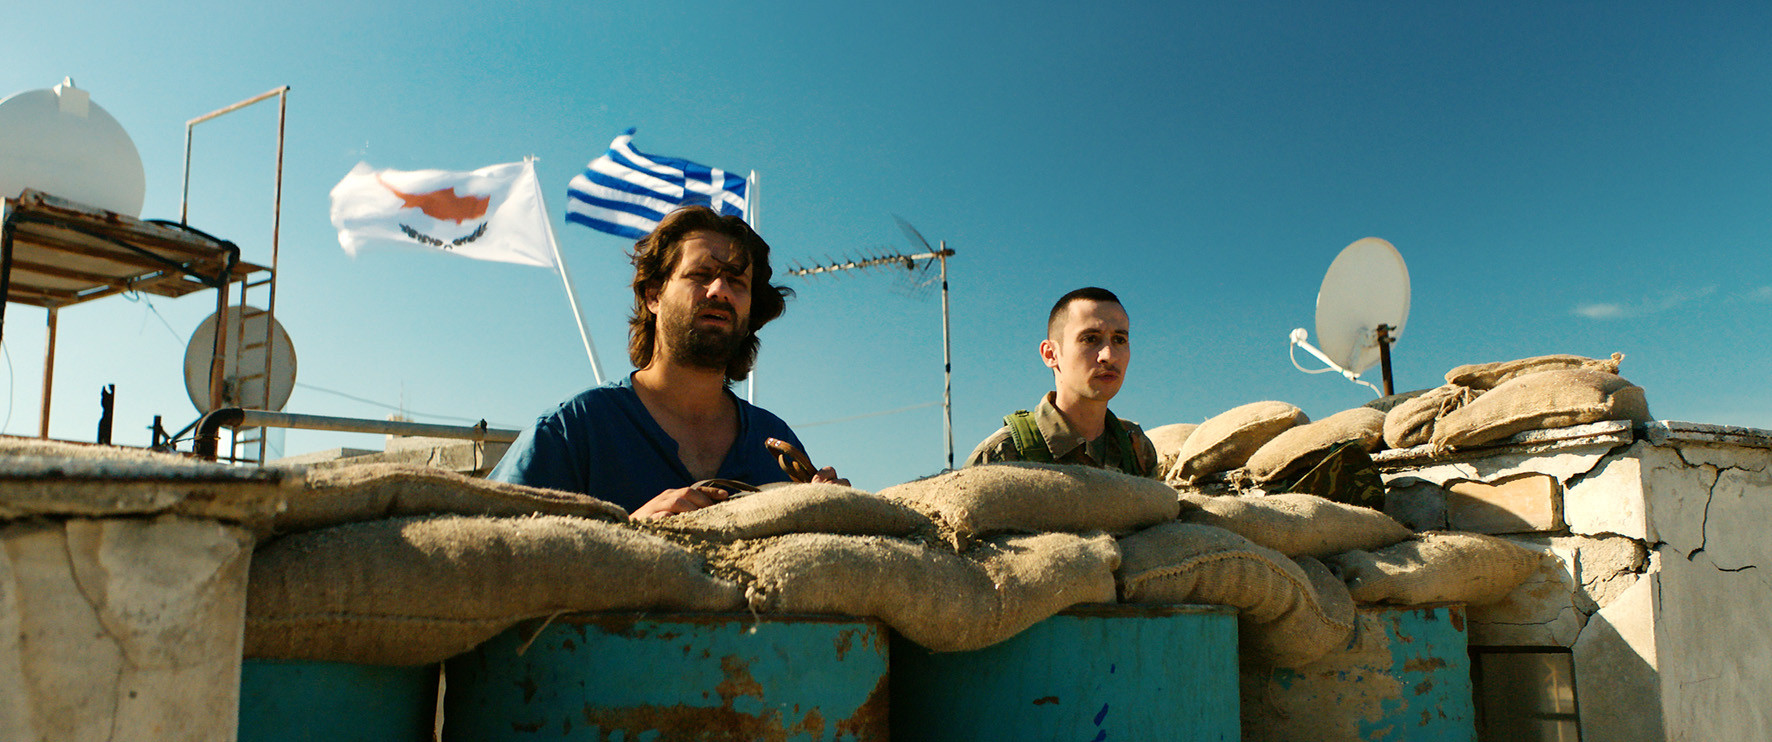 Το 12άρι της νέας κινηματογραφικής εβδομάδας πάει δικαίως στην Κύπρο